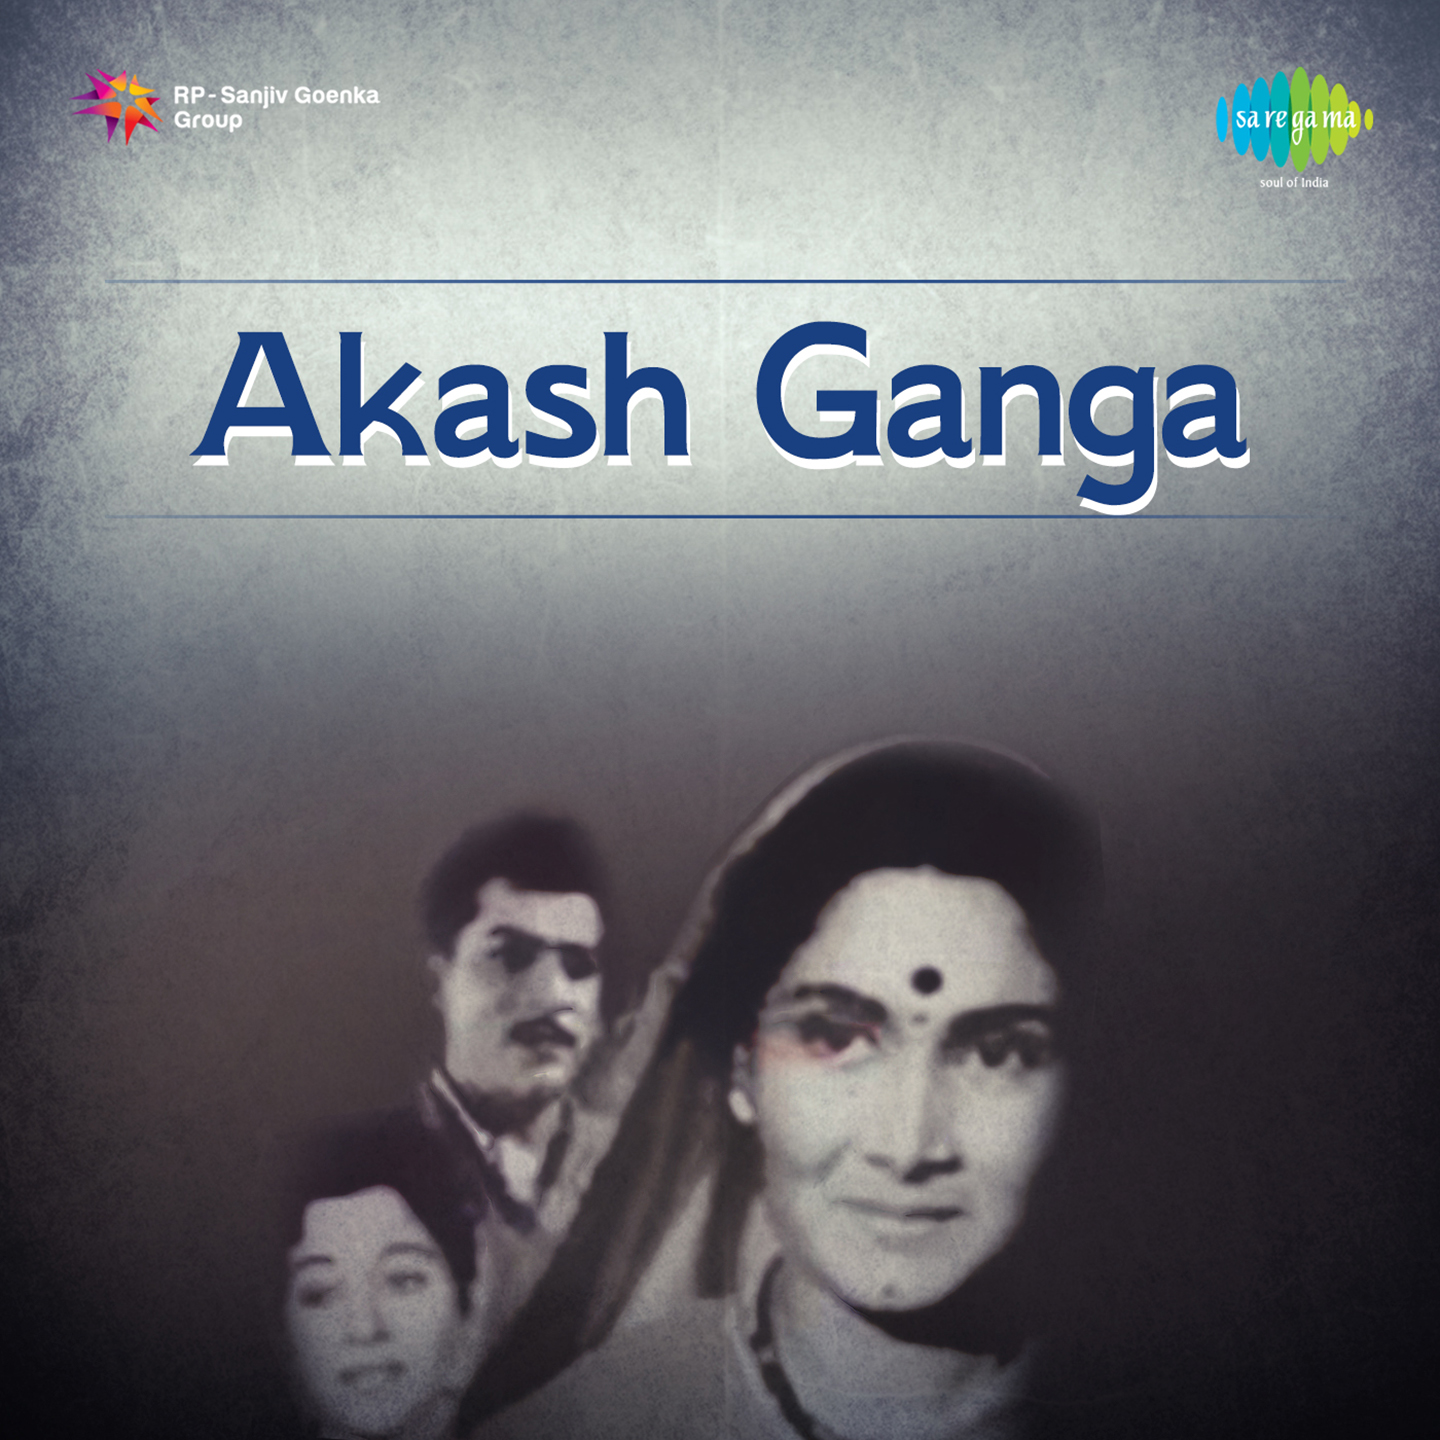 Akash Ganga